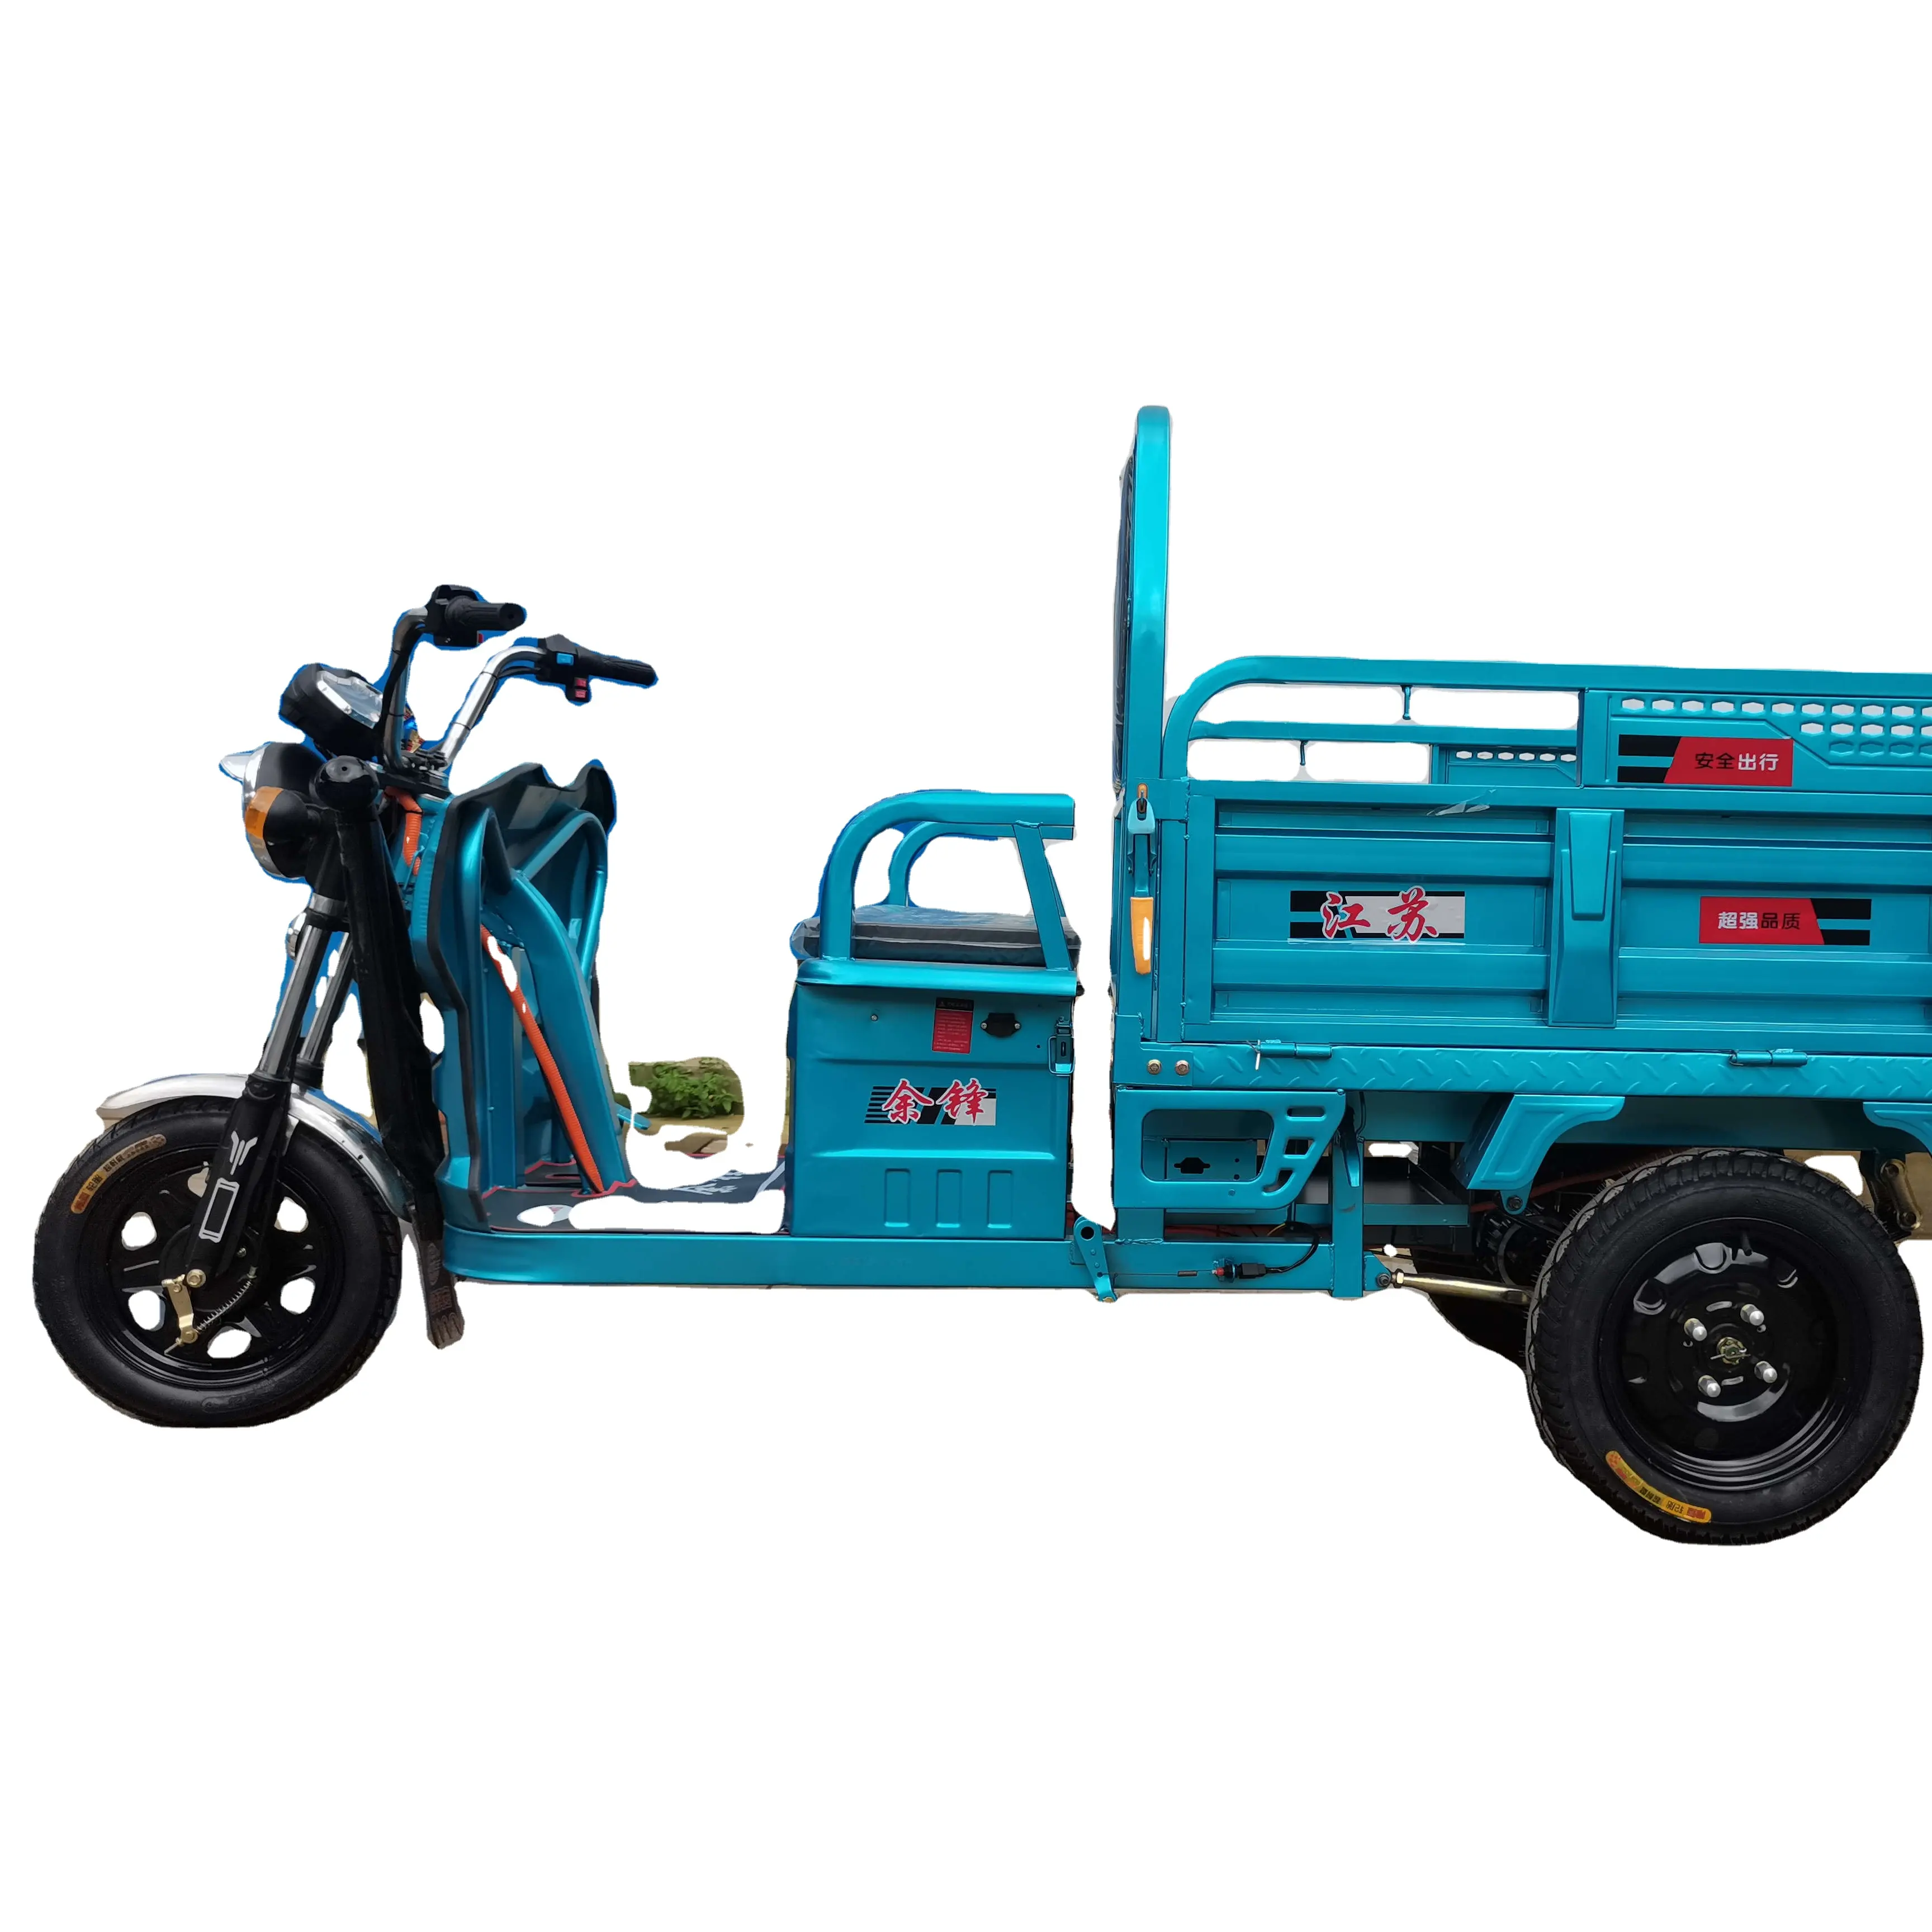 Cina fabbrica 3 tre ruote moto veicolo passeggeri Scooter E-Bike Loader adulto Trike grande triciclo elettrico per il carico